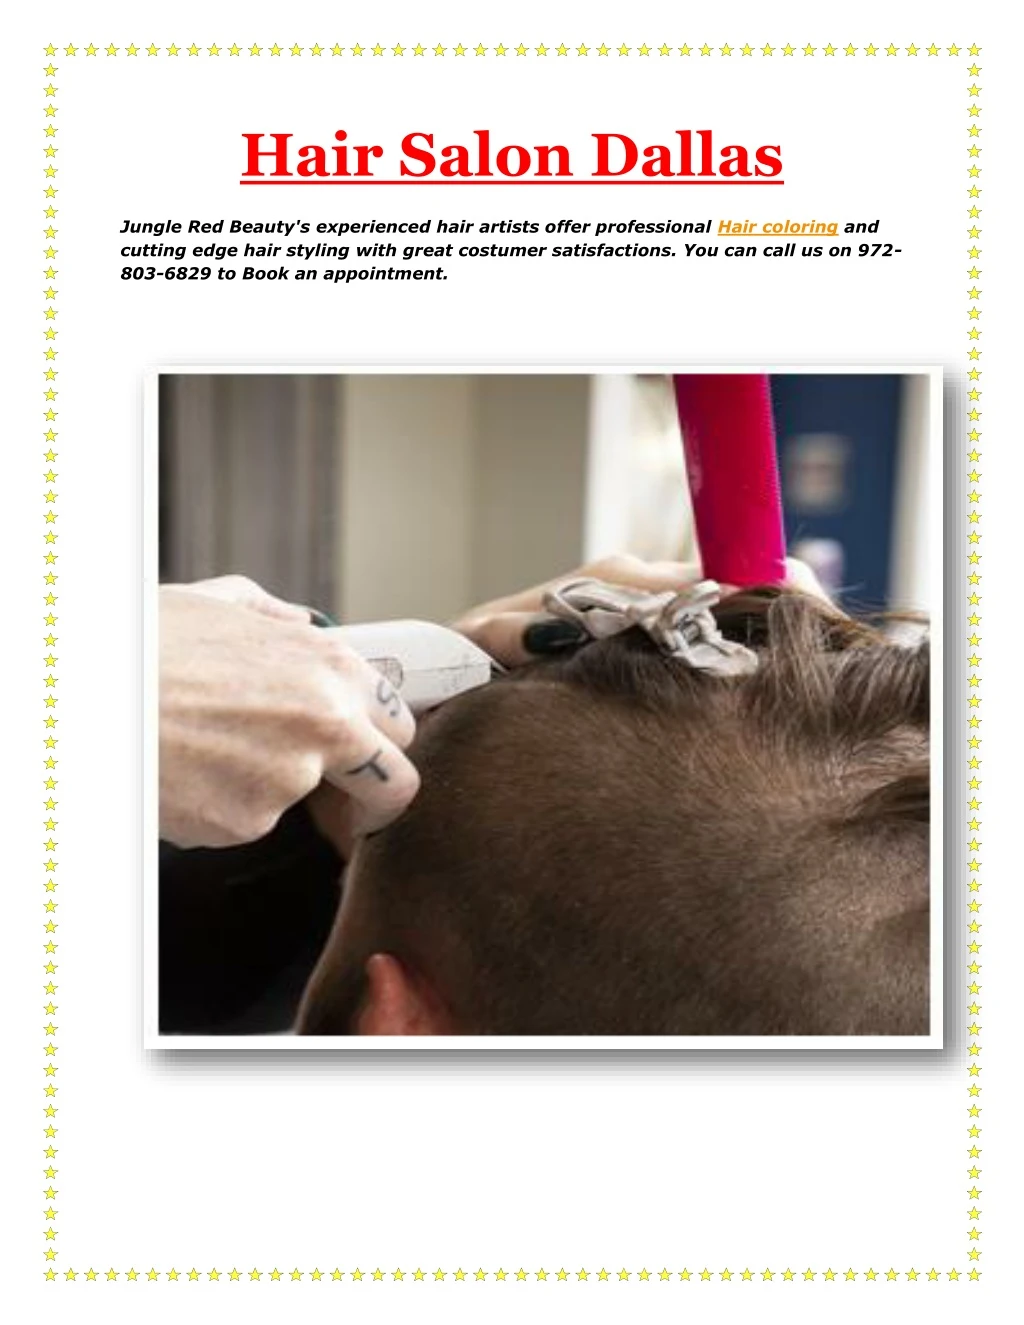 hair salon dallas